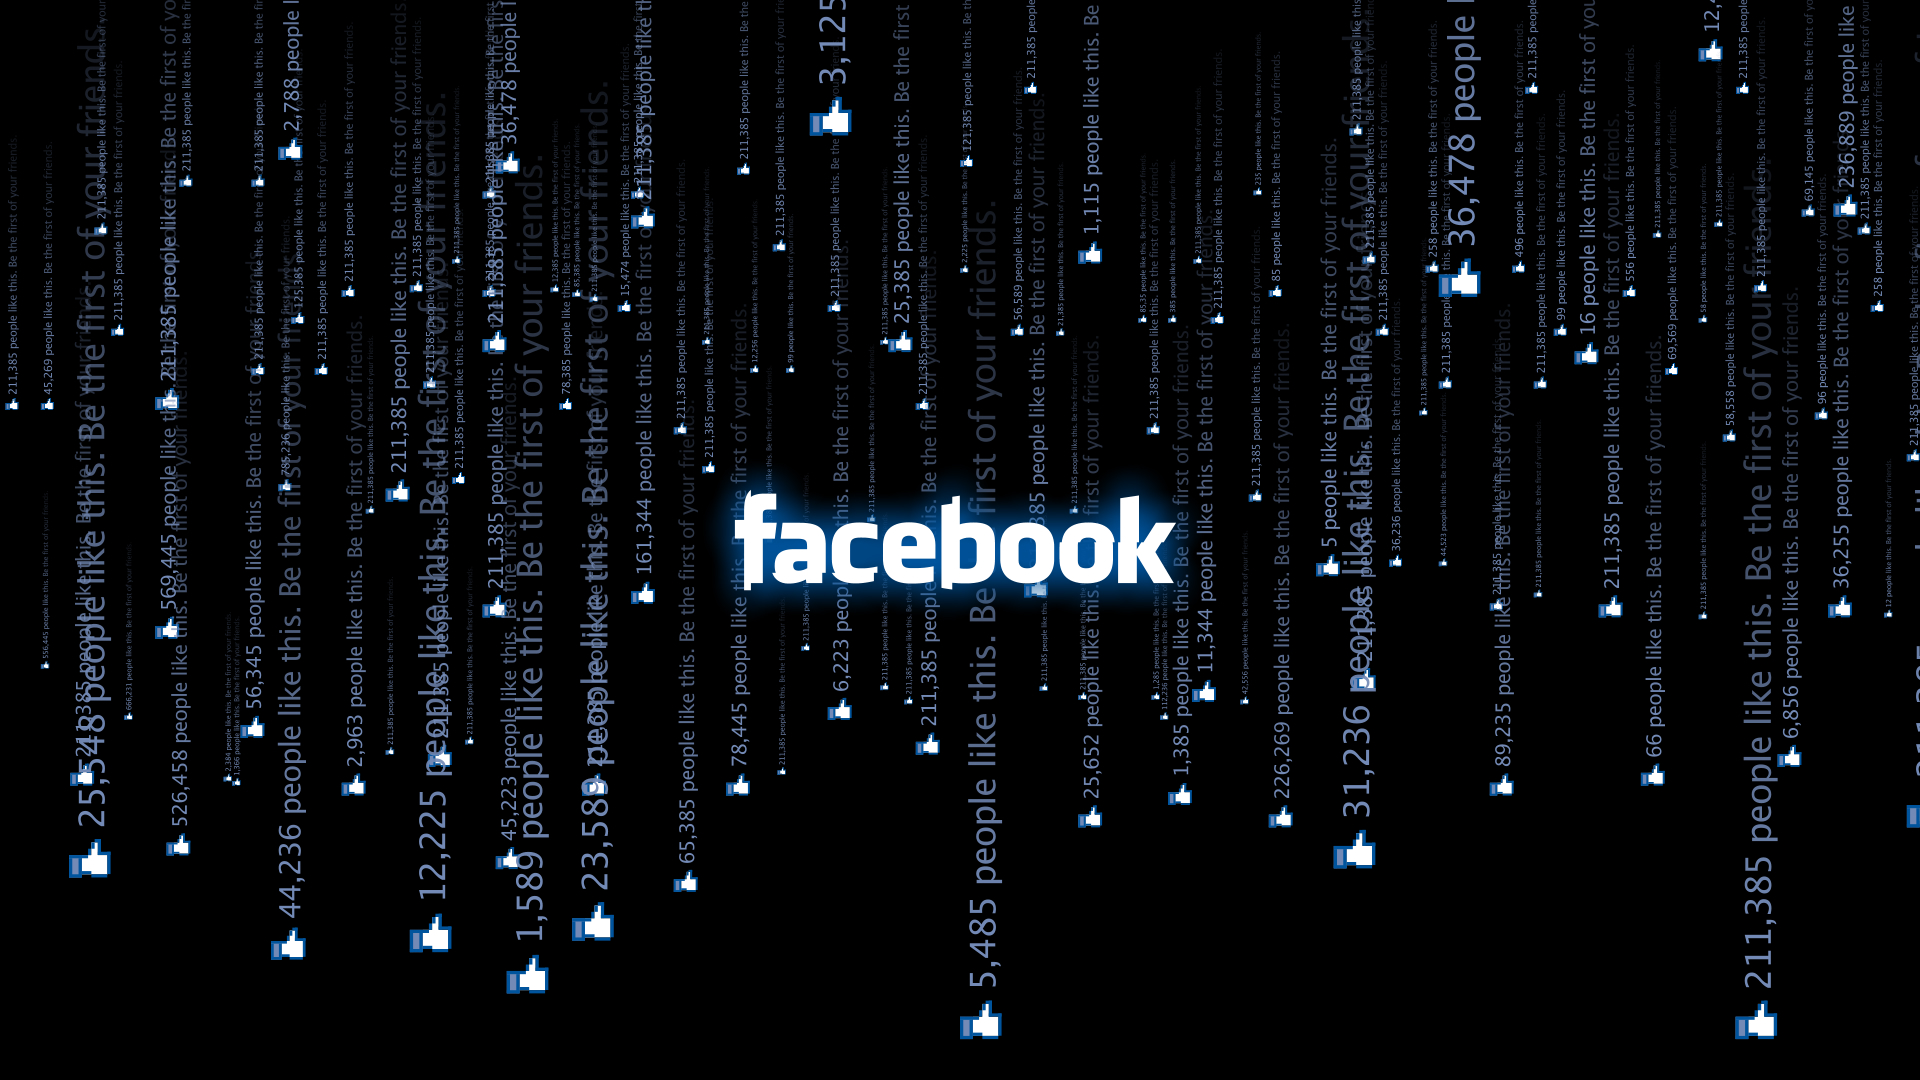 Facebook desktop wallpaper featuring technology.